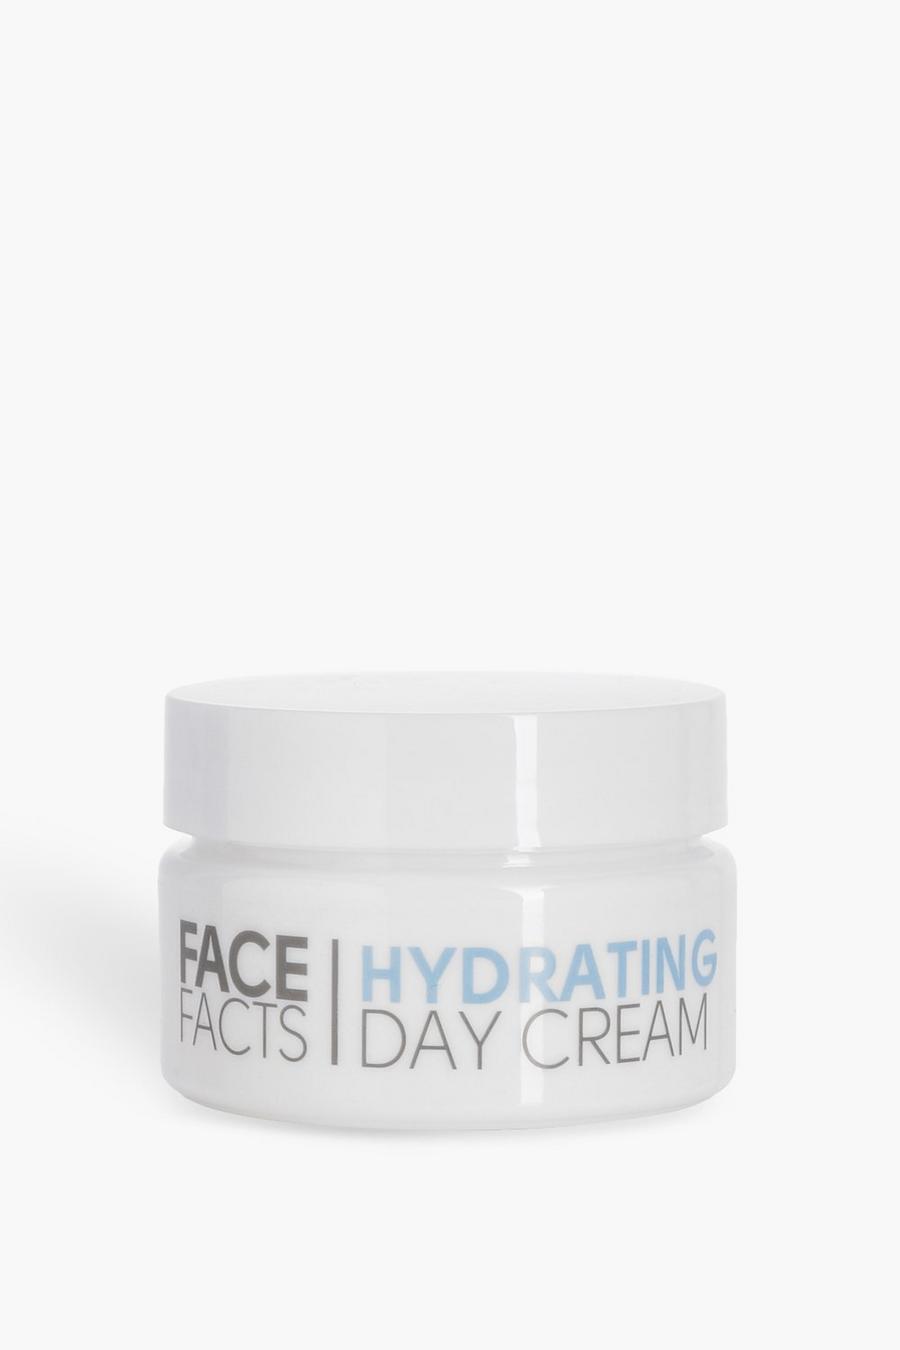 Crema hidratante para el día de Face Facts image number 1